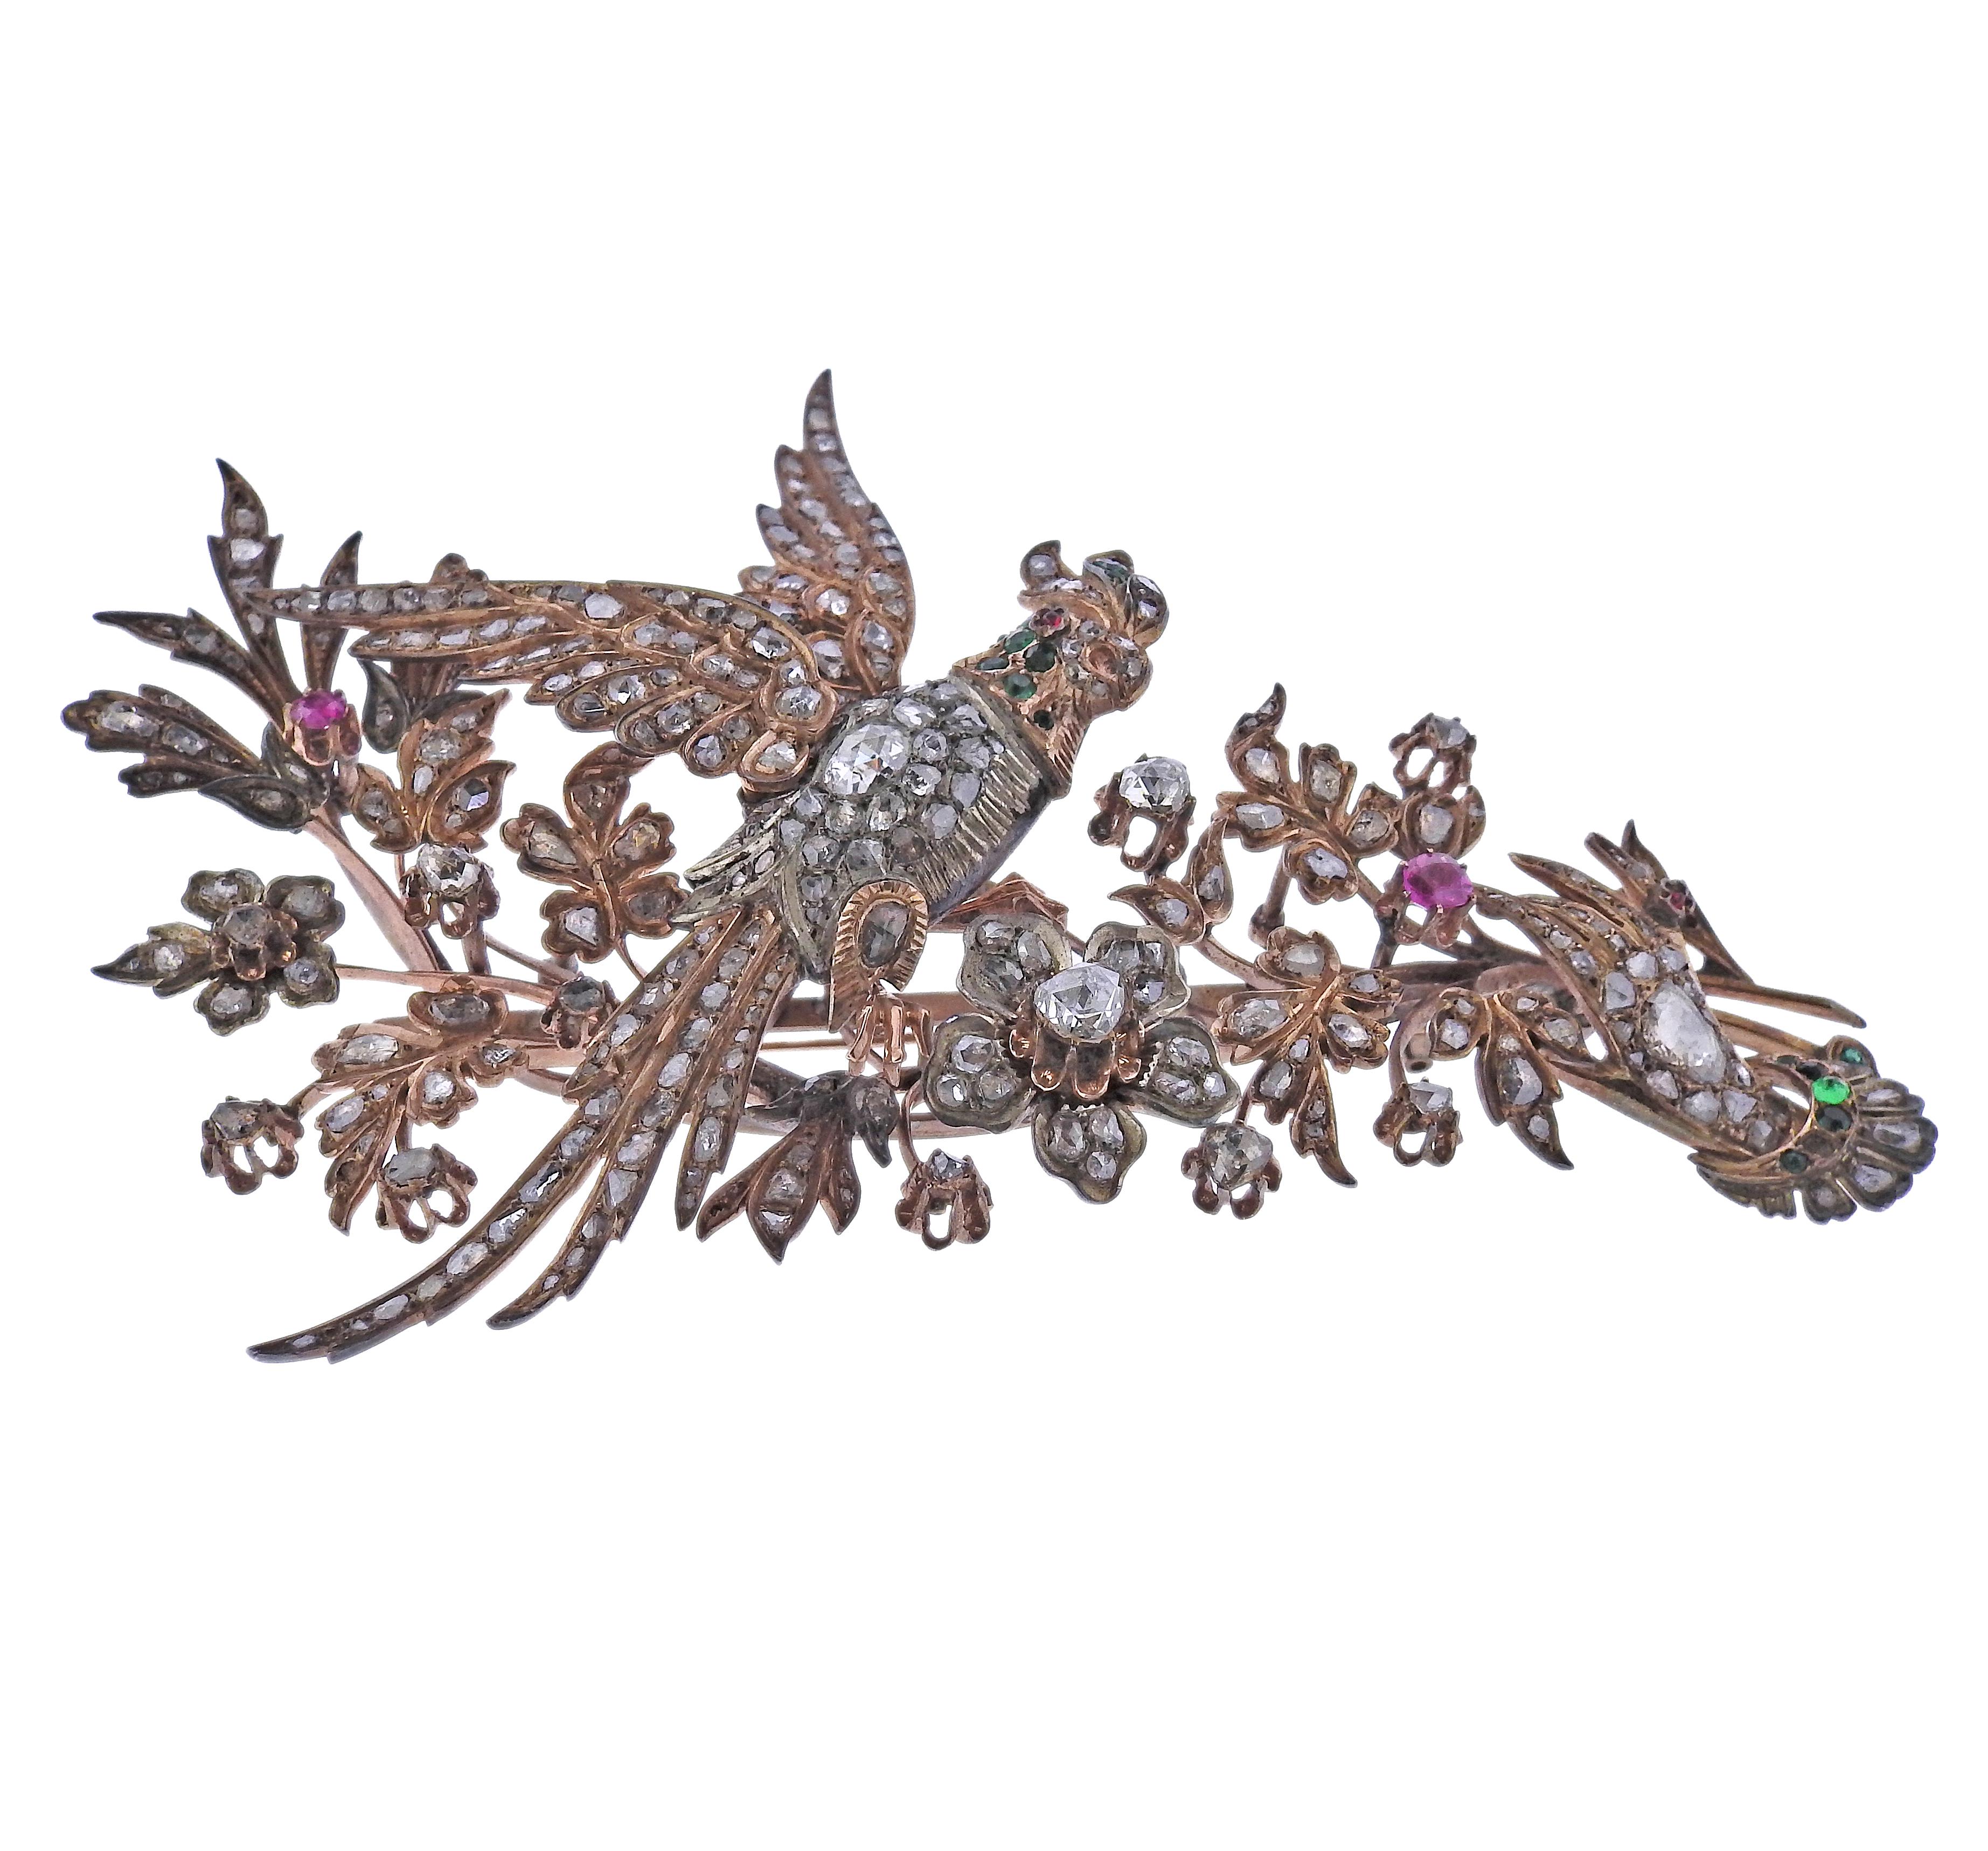 Große antike Goldbrosche, die einen Vogel mit Blumen darstellt. Besetzt mit Diamanten im Rosenschliff, Smaragden und Rubinen. Mehrere Steine sind abgesplittert und/oder fehlen. Brosche misst 4,5